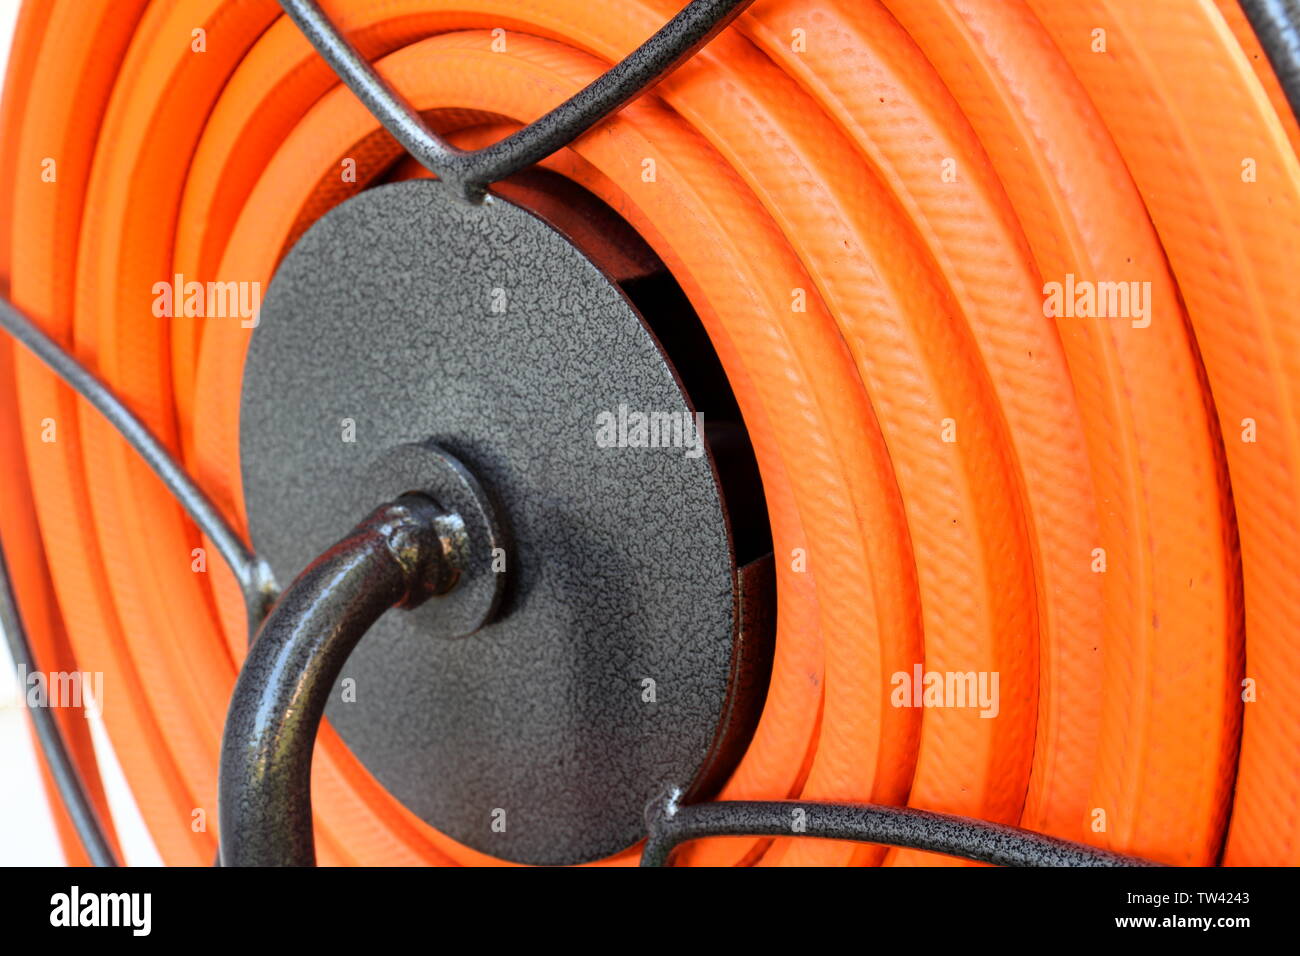 Nice clean flexible orange roulé sans problème sur un enrouleur de tuyau  Photo Stock - Alamy